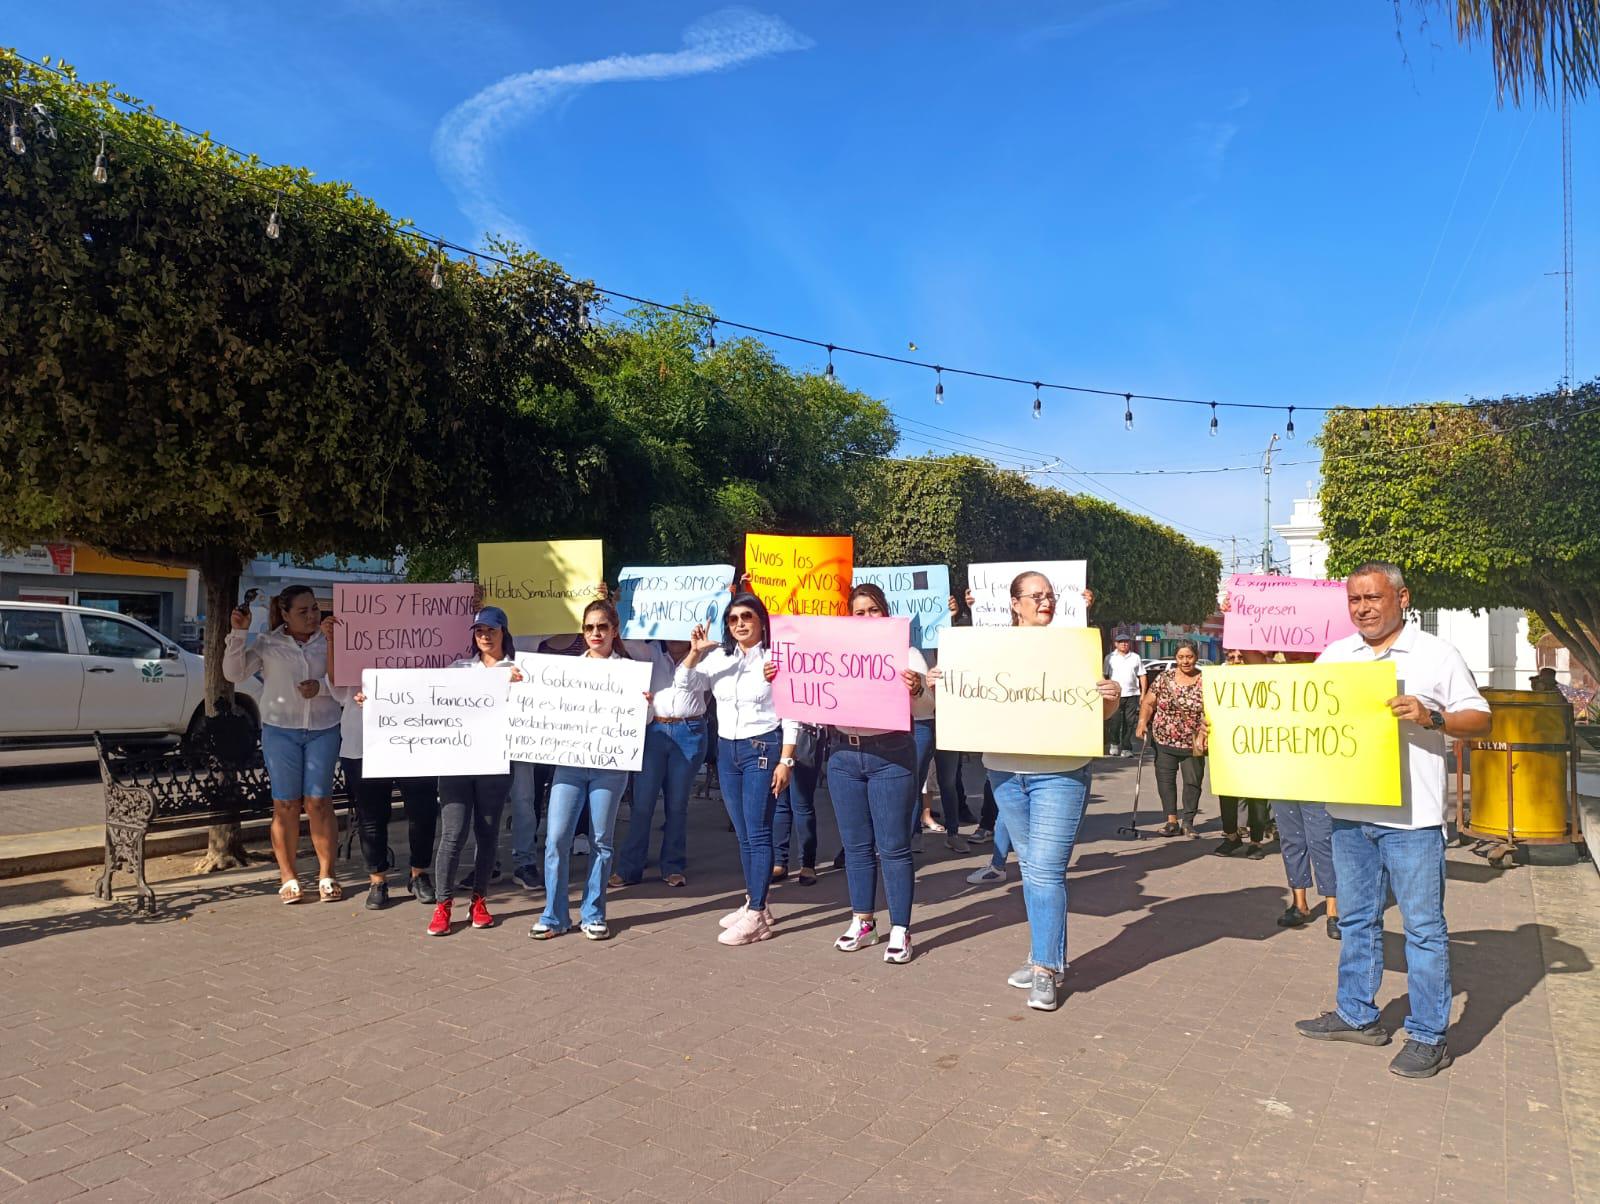 $!Integrantes del PAS se manifiestan en Escuinapa para exigir el regreso de Luis y Francisco